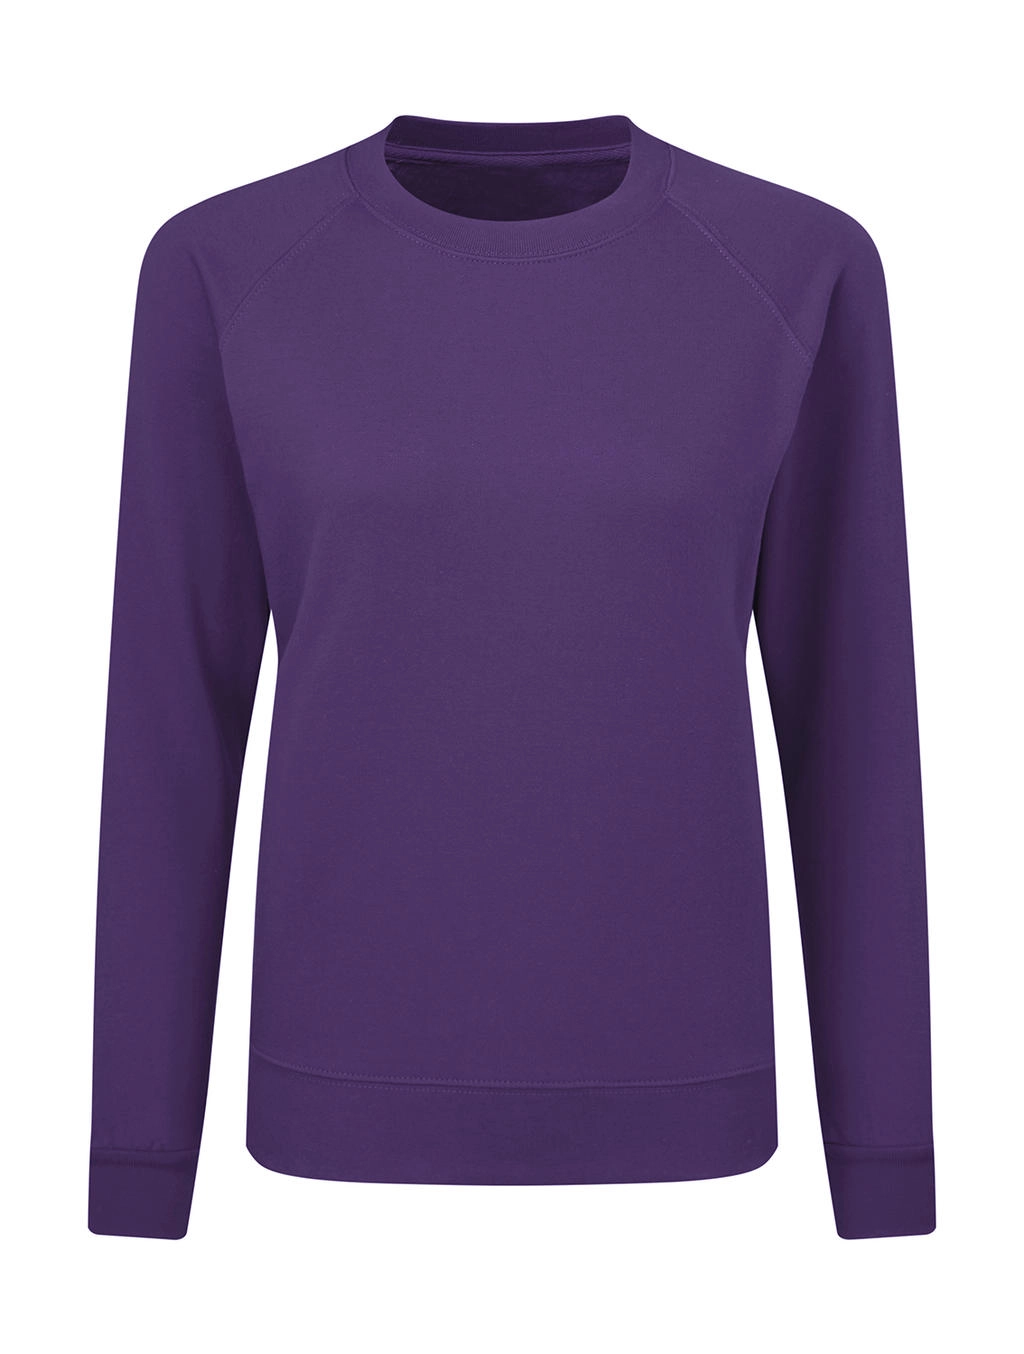 Raglan Sweatshirt Women zum Besticken und Bedrucken in der Farbe Purple mit Ihren Logo, Schriftzug oder Motiv.